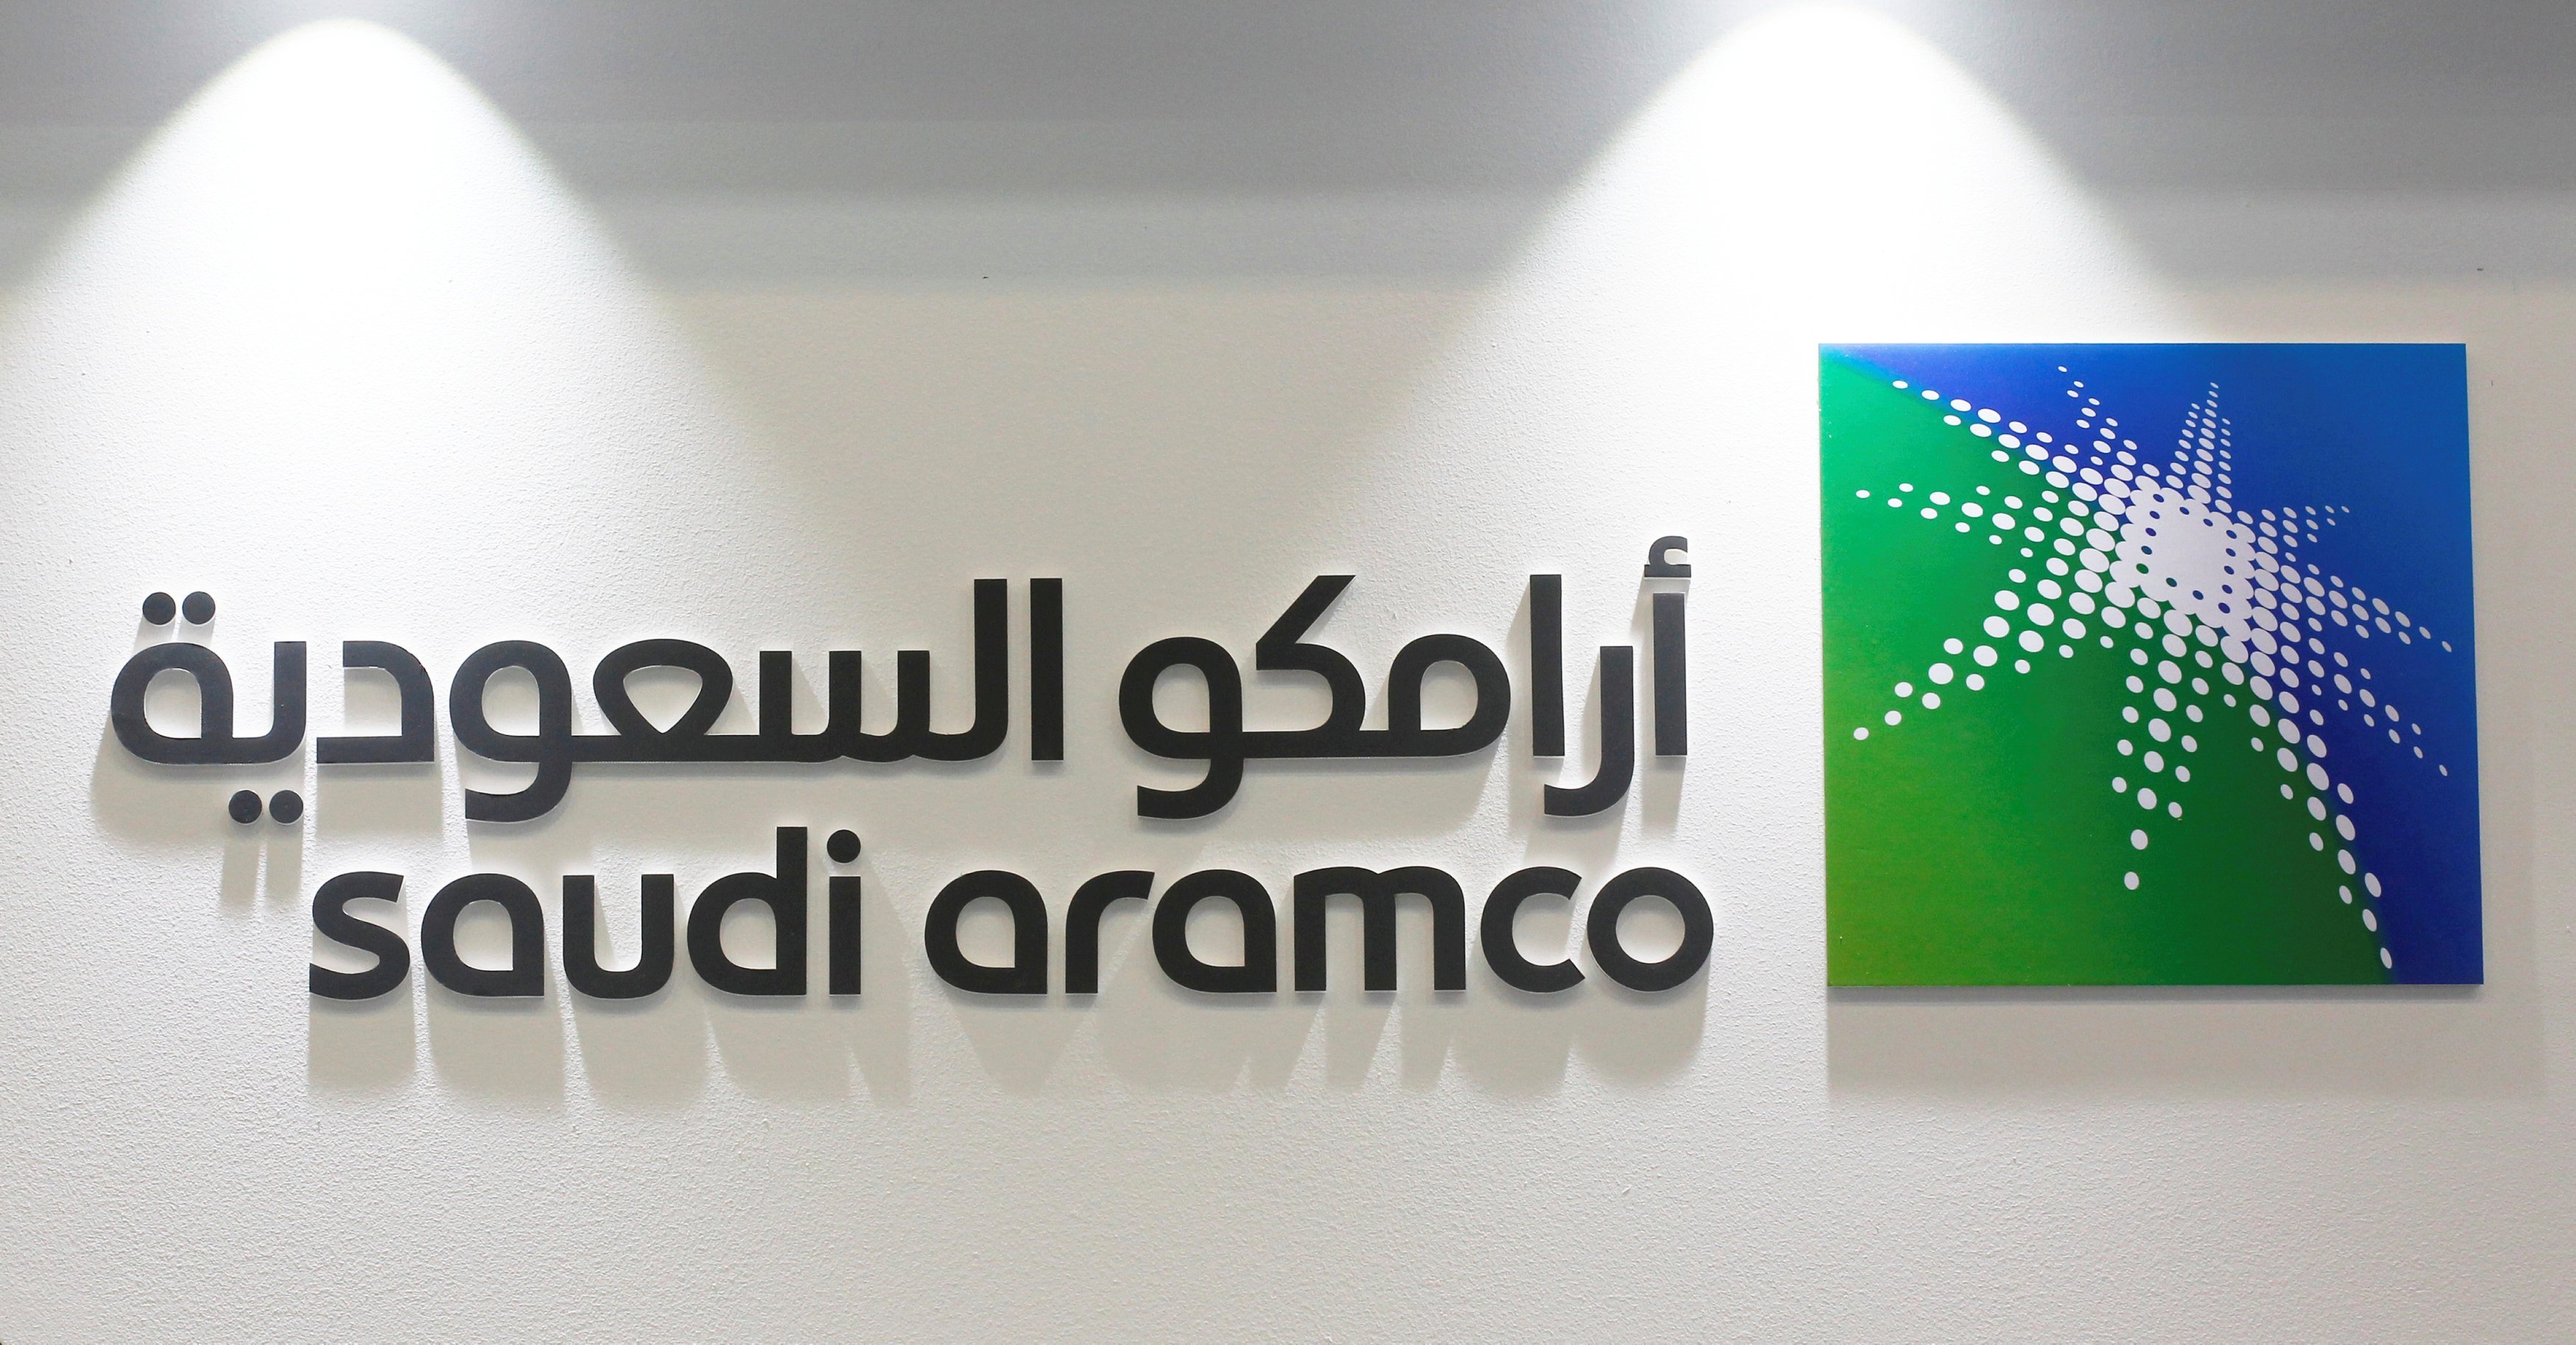 L'IPO d'Aramco probablement repoussée à 2019, selon le FT